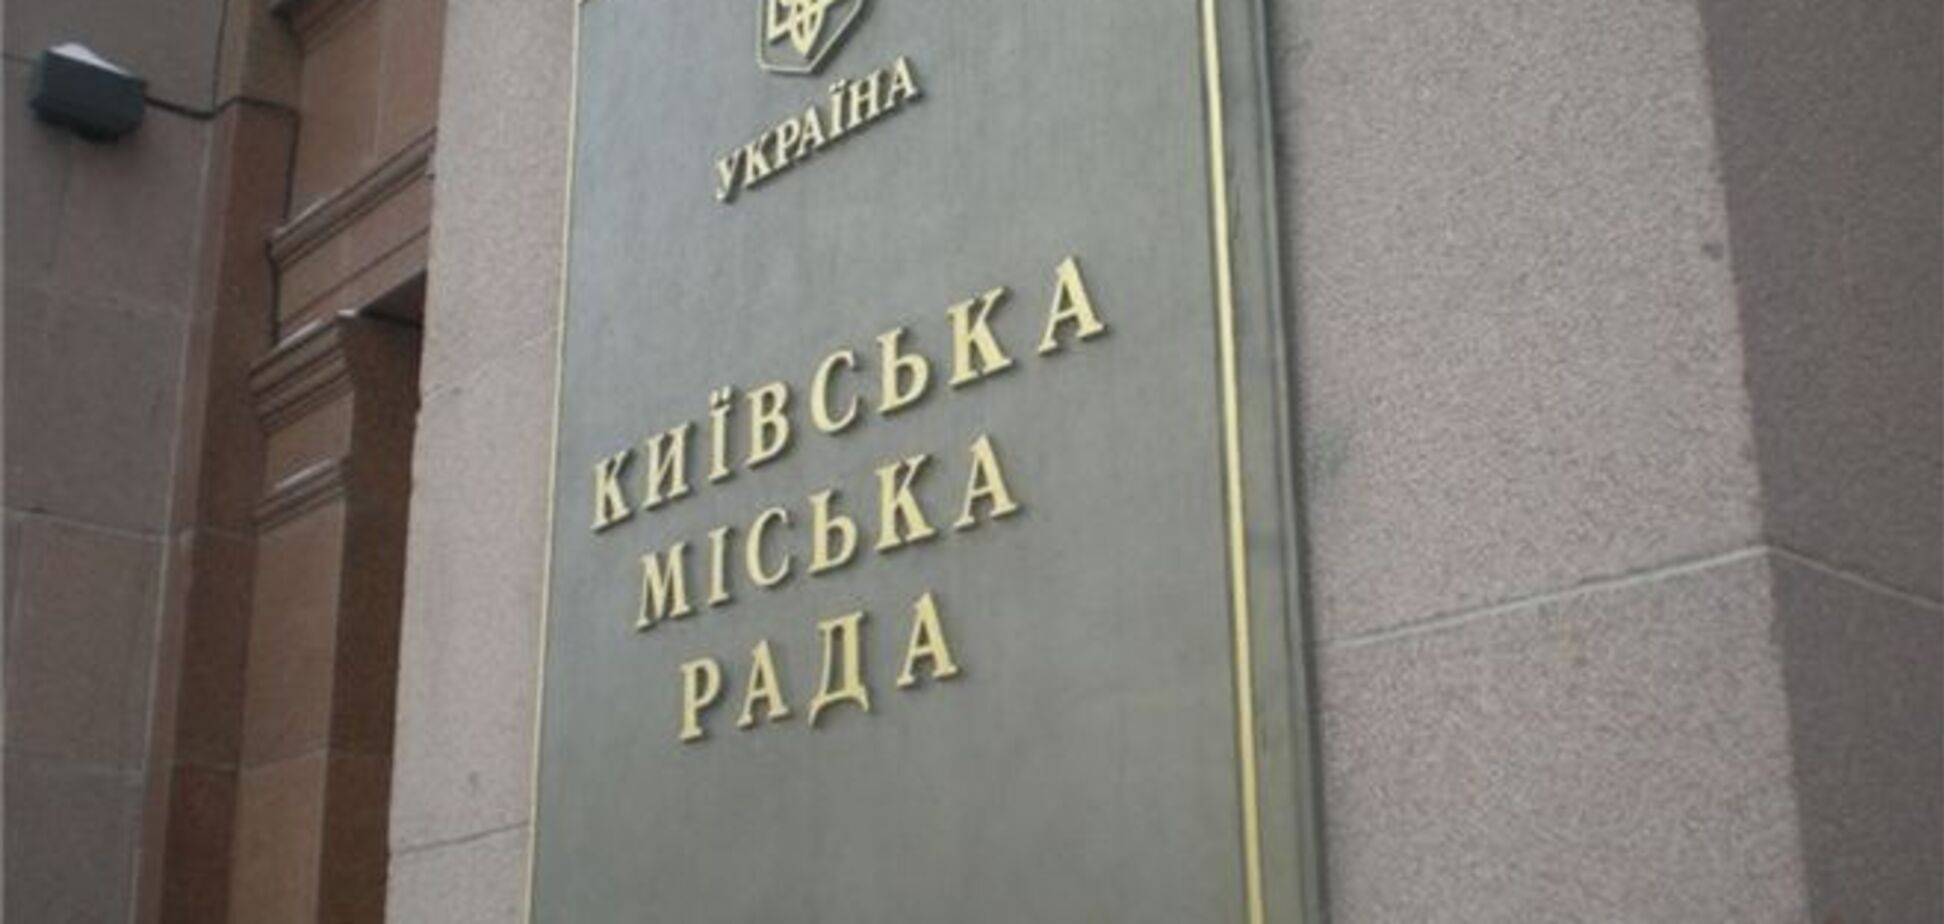 Апелляционный суд признал Киевсовет легитимным 